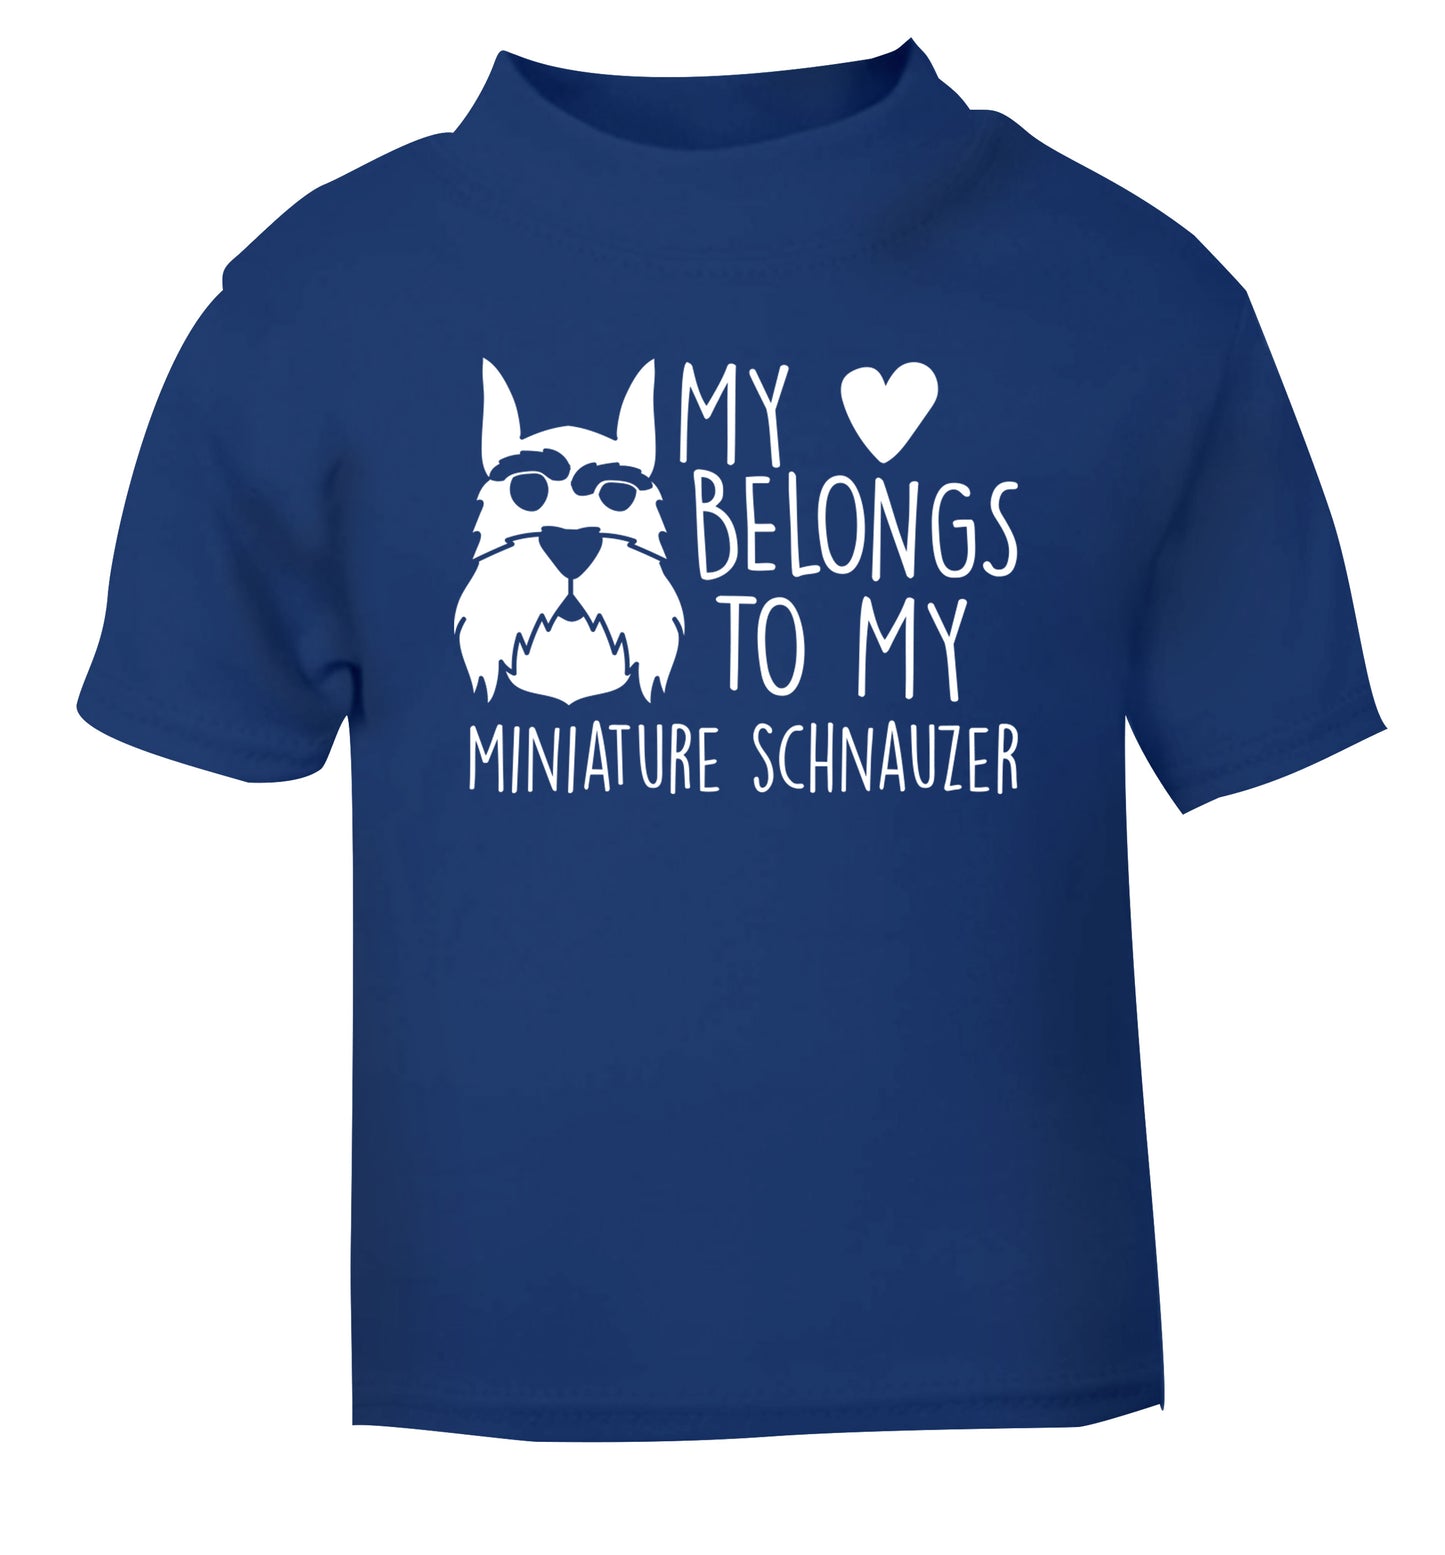 My heart belongs to my miniature schnauzer blue Baby Toddler Tshirt 2 Years